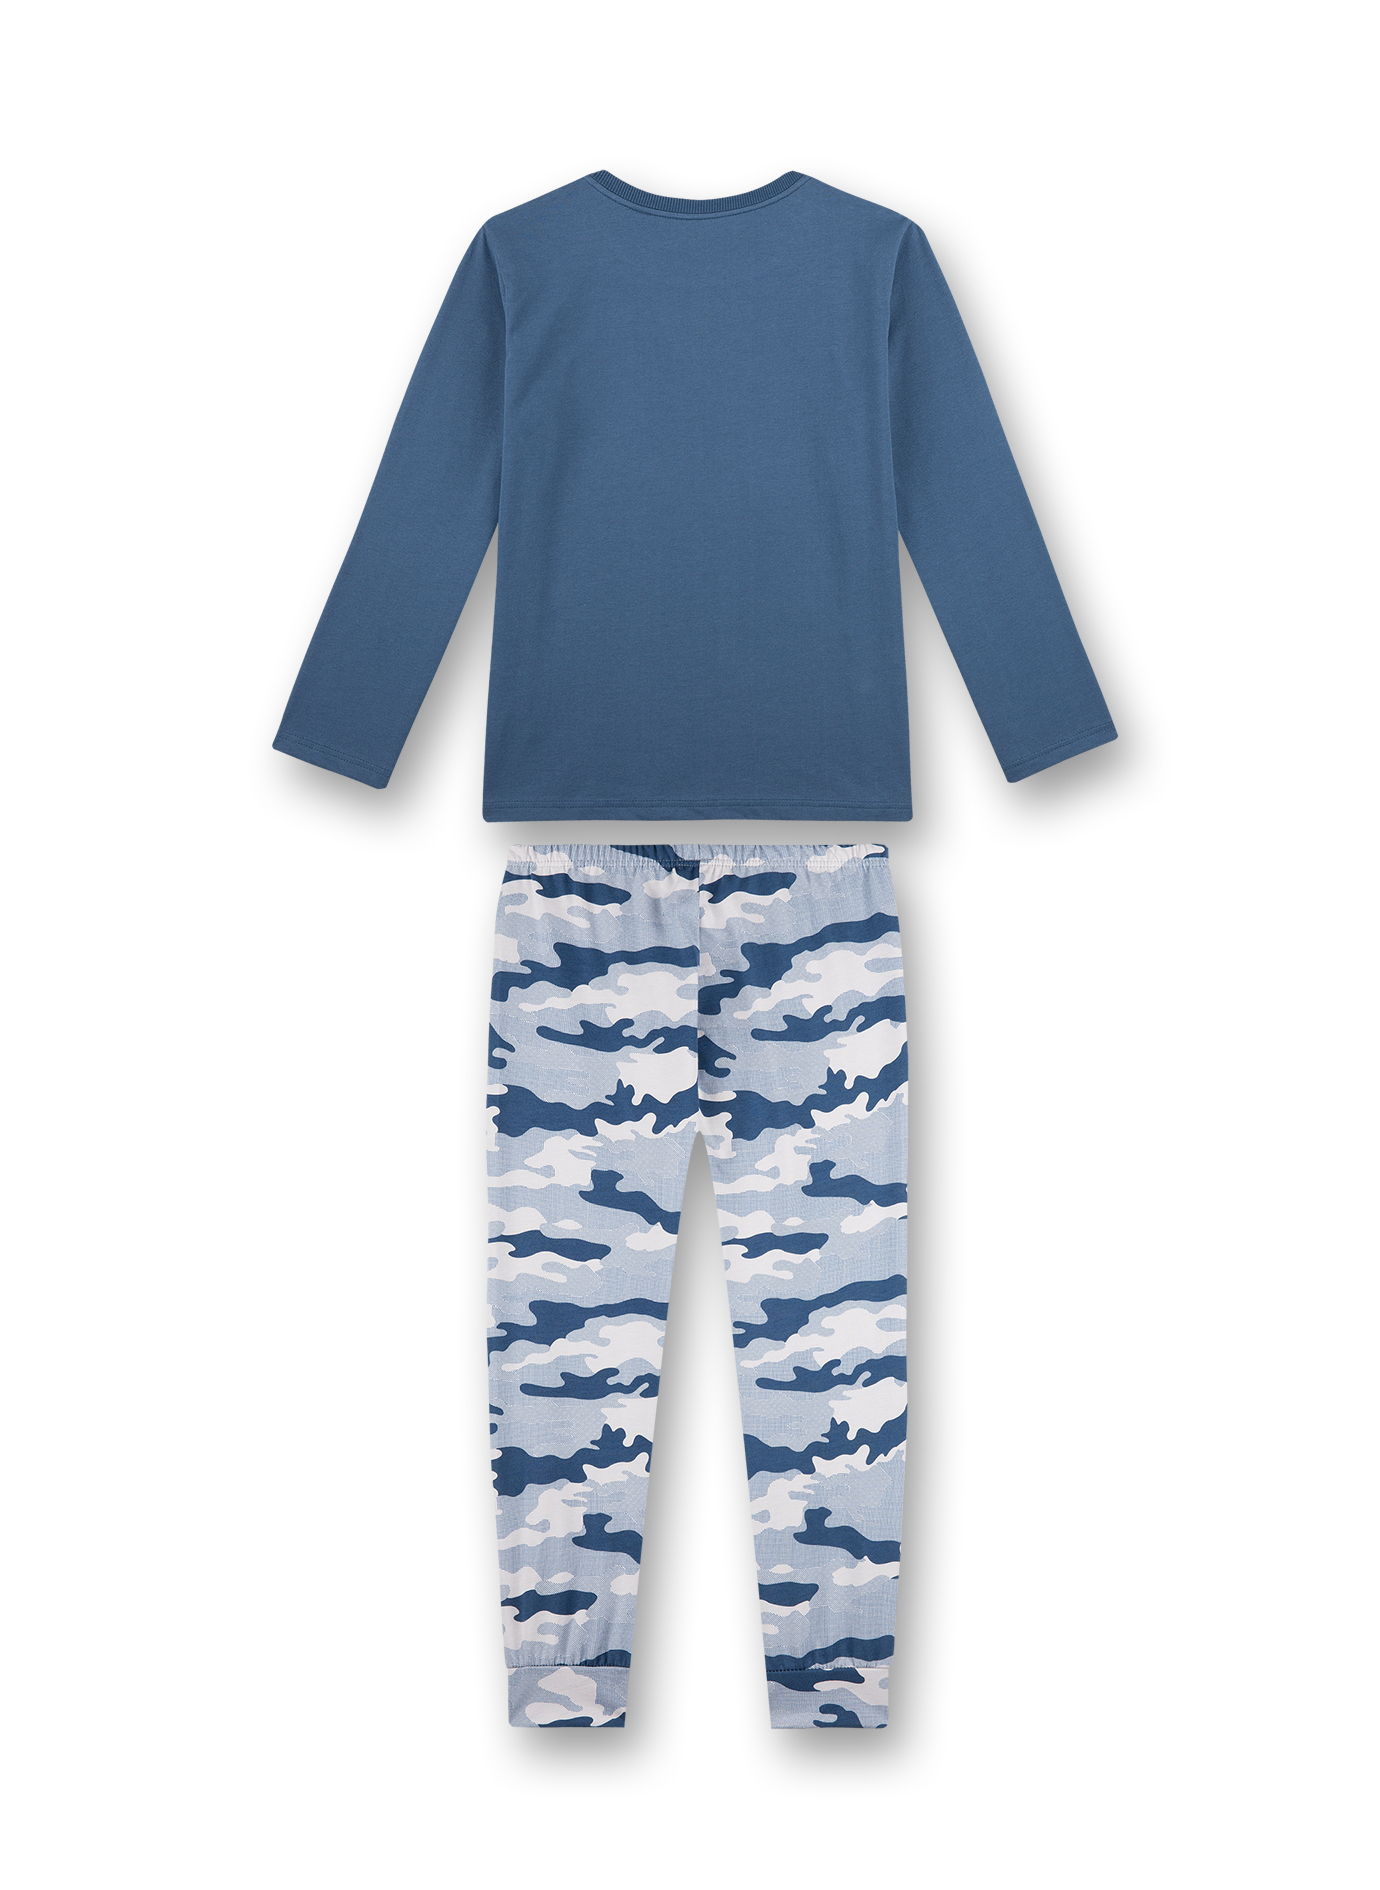 Jungen-Schlafanzug Blau Snowboarder